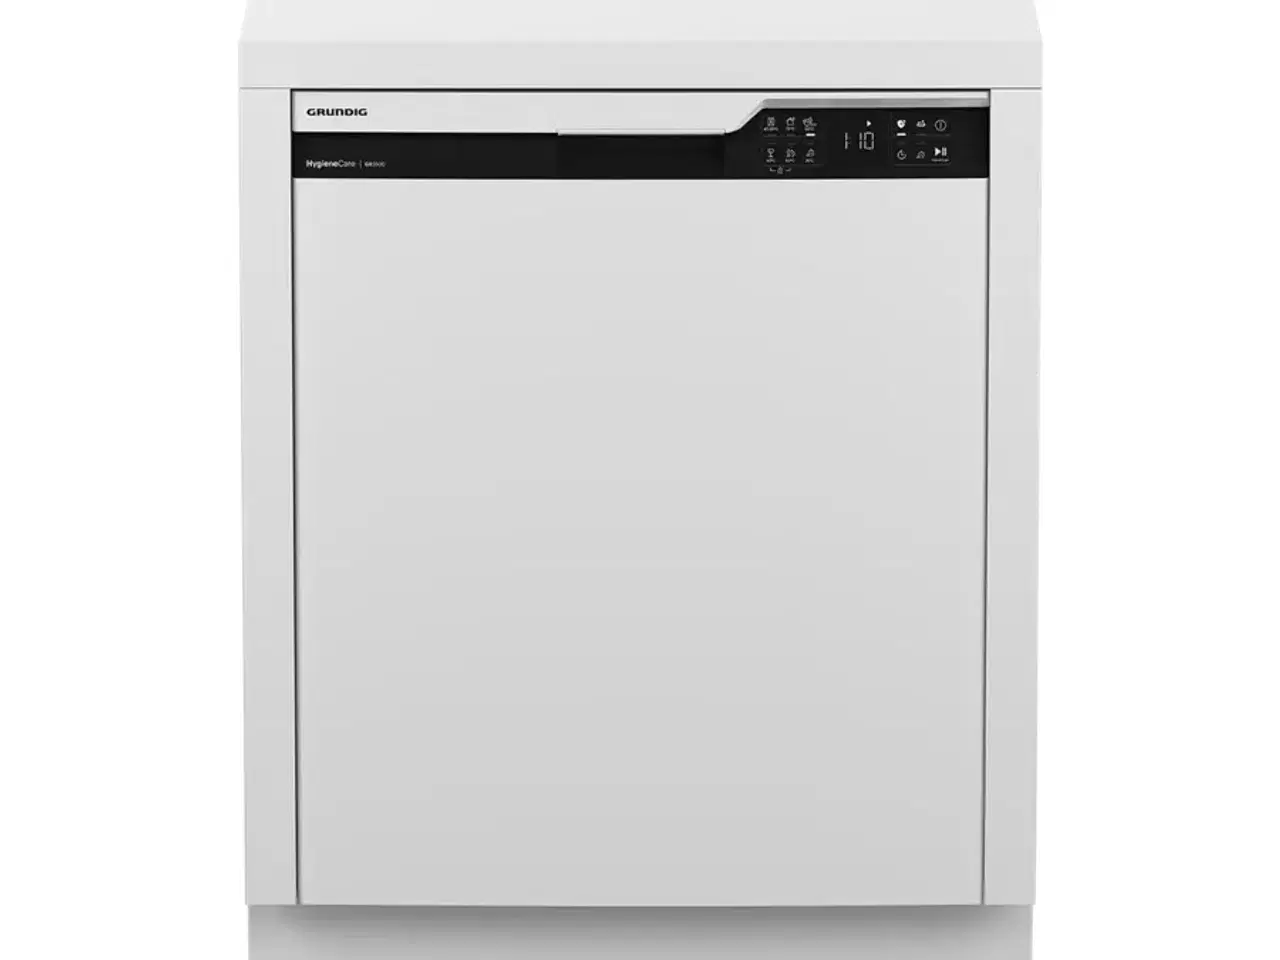 Billede 2 - Grundig opvaskemaskine 